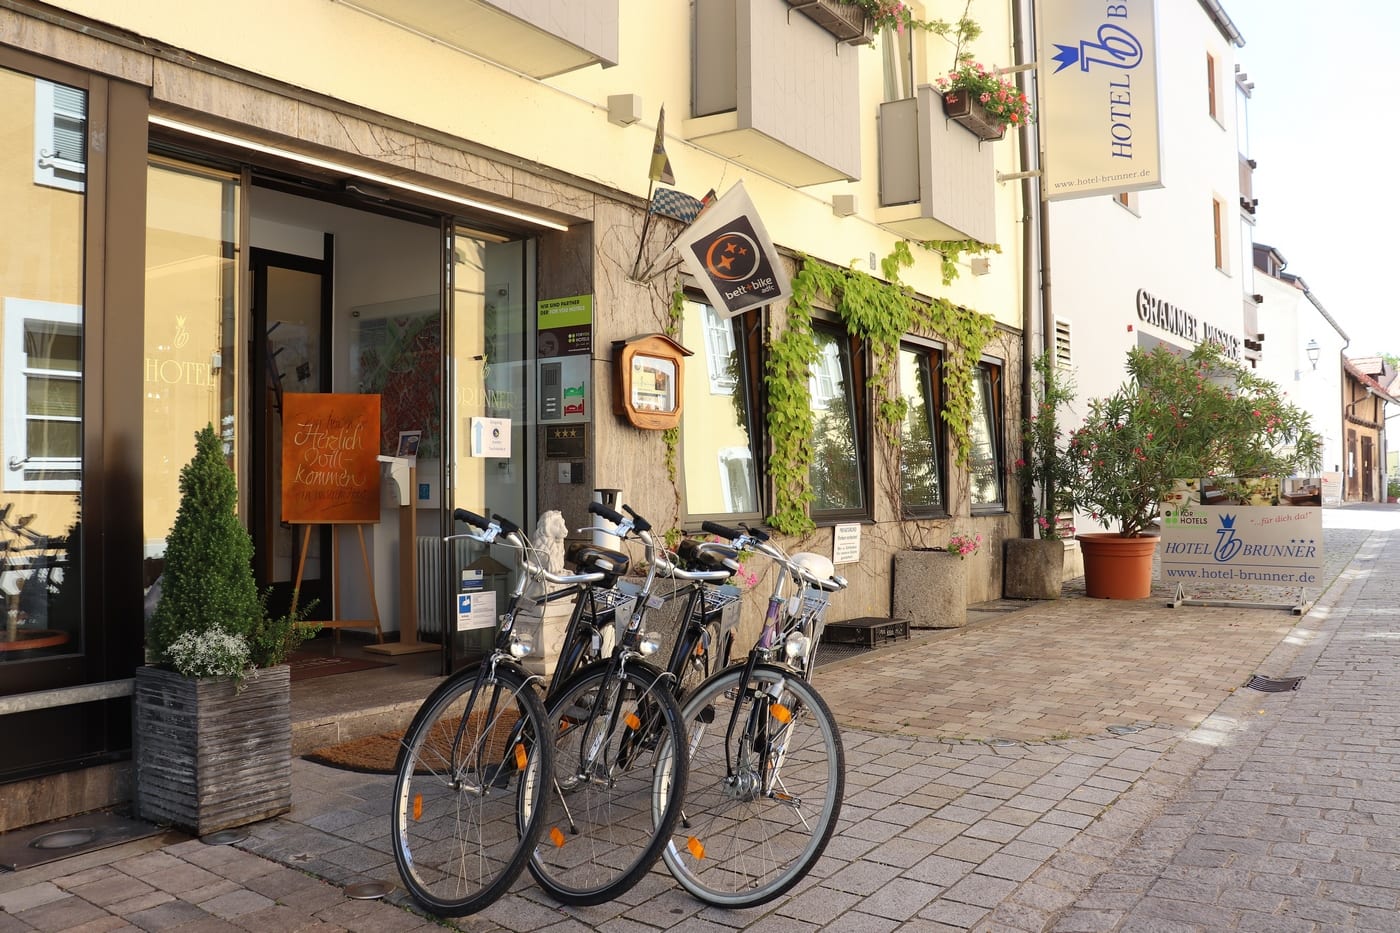 Startpunkt für schöne Radtouren: Das Hotel Brunner in Amberg